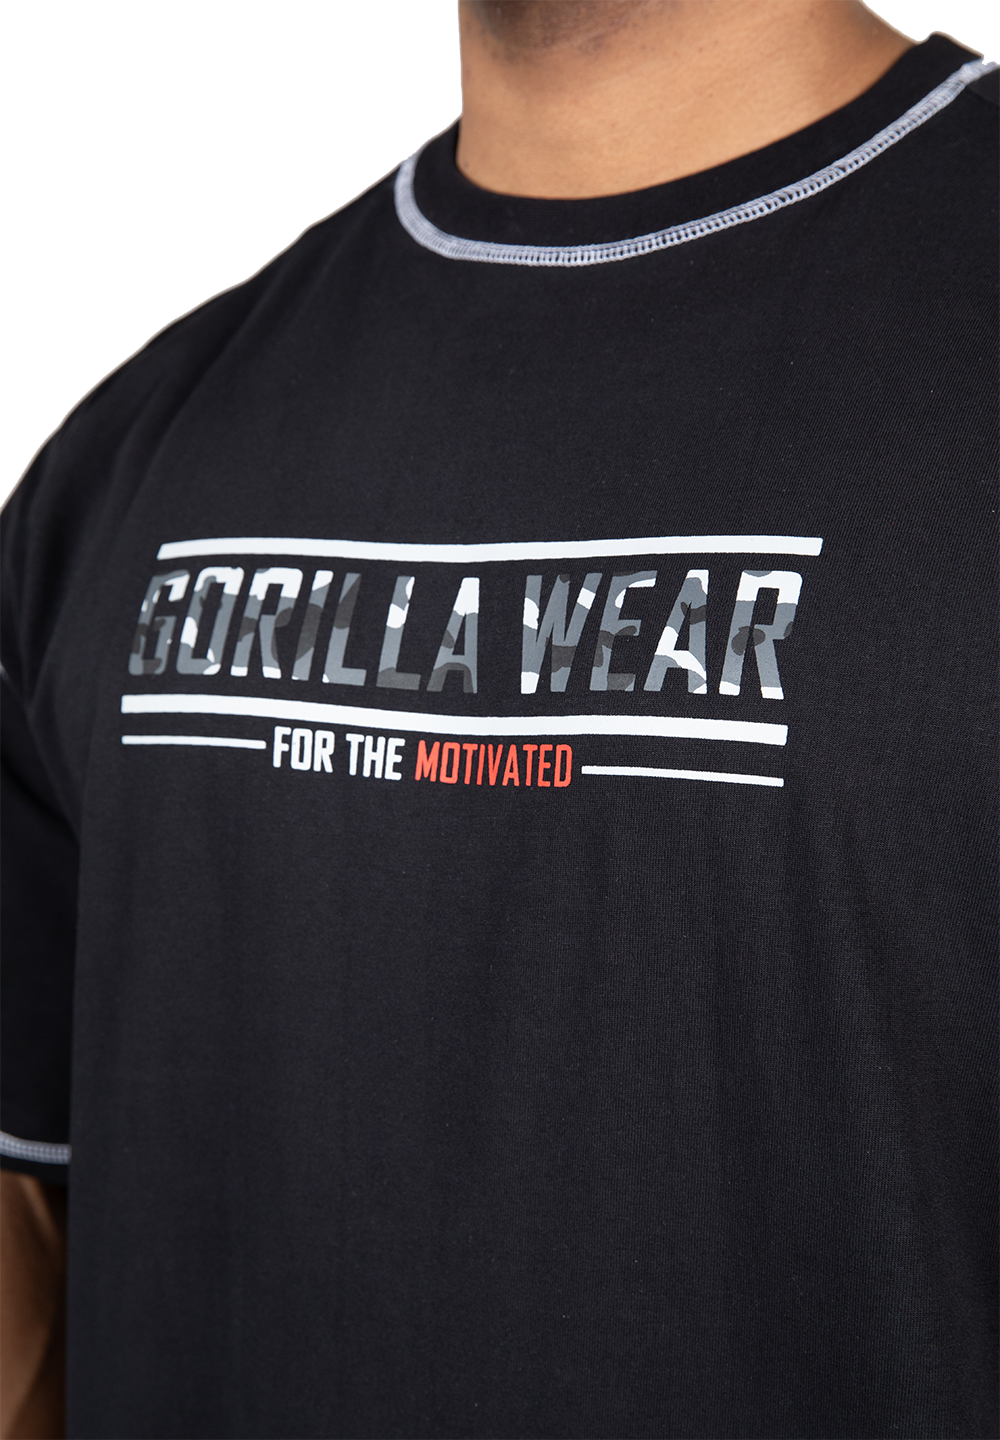 Футболка оверсайз Saginaw Oversized T-Shirt - Black от Gorilla Wear